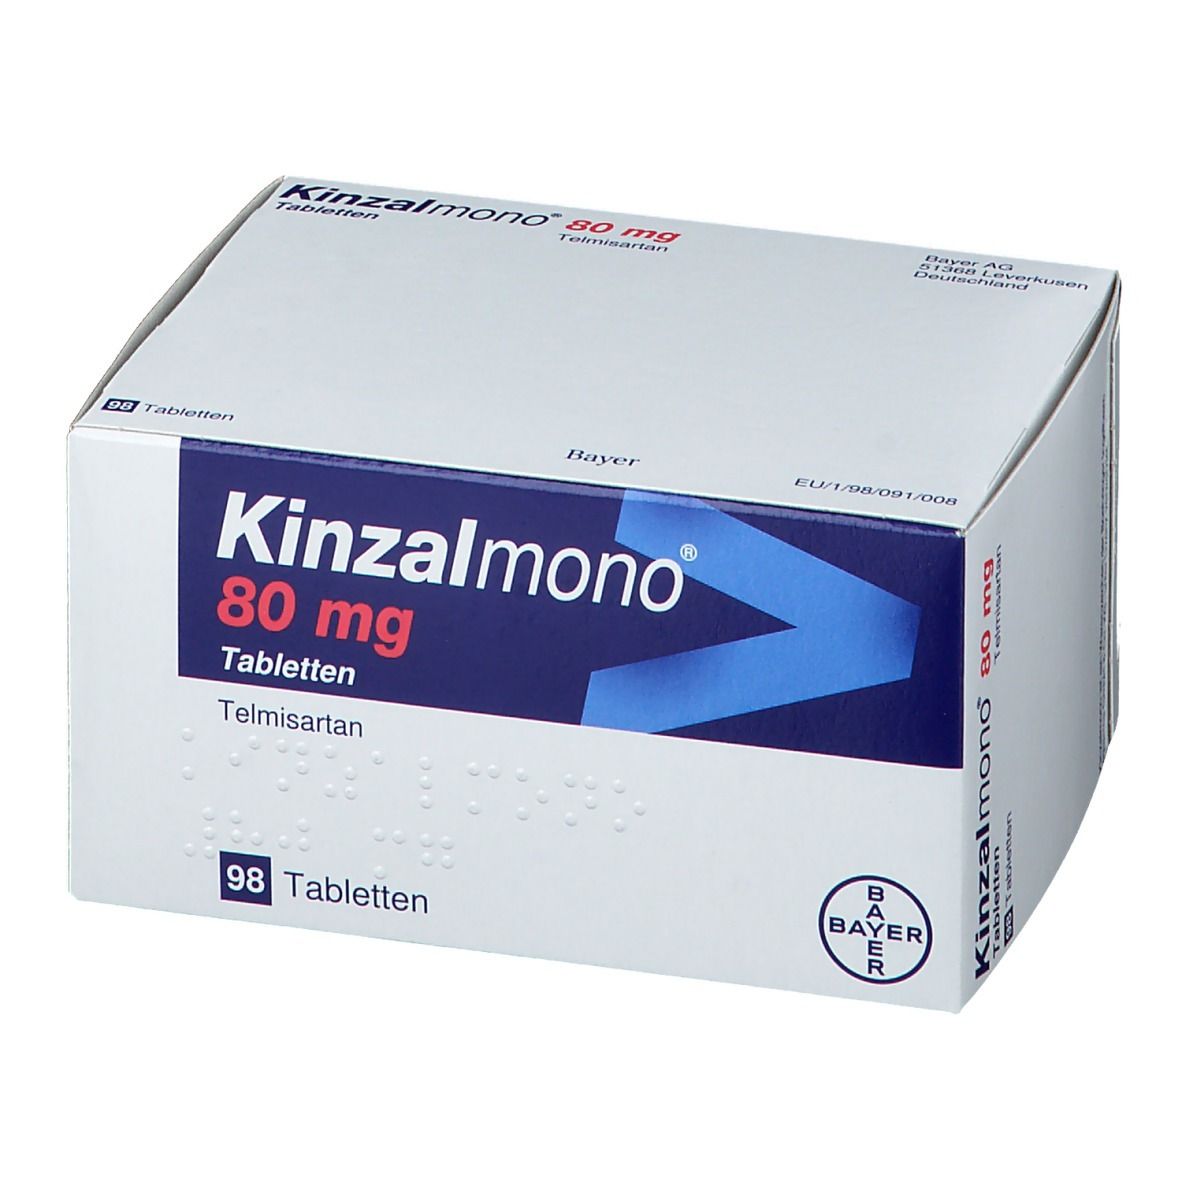 Kinzalmono® 80 mg